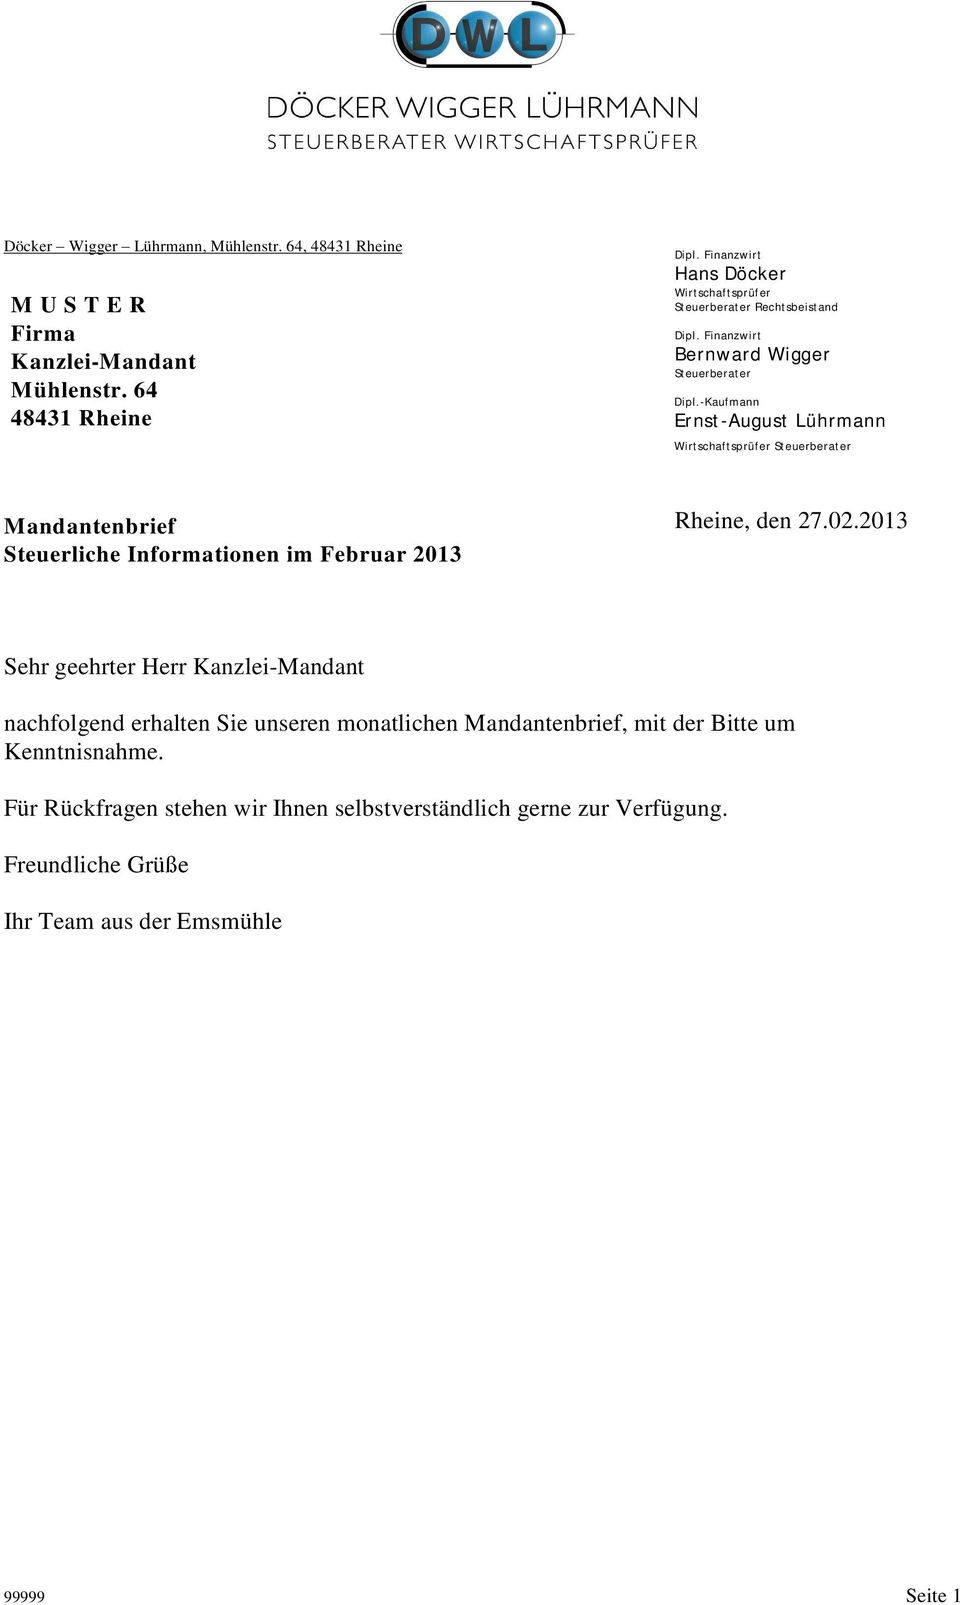 -Kaufmann Ernst-August Lührmann Wirtschaftsprüfer Steuerberater Mandantenbrief Steuerliche Informationen im Februar 2013 Rheine, den 27.02.